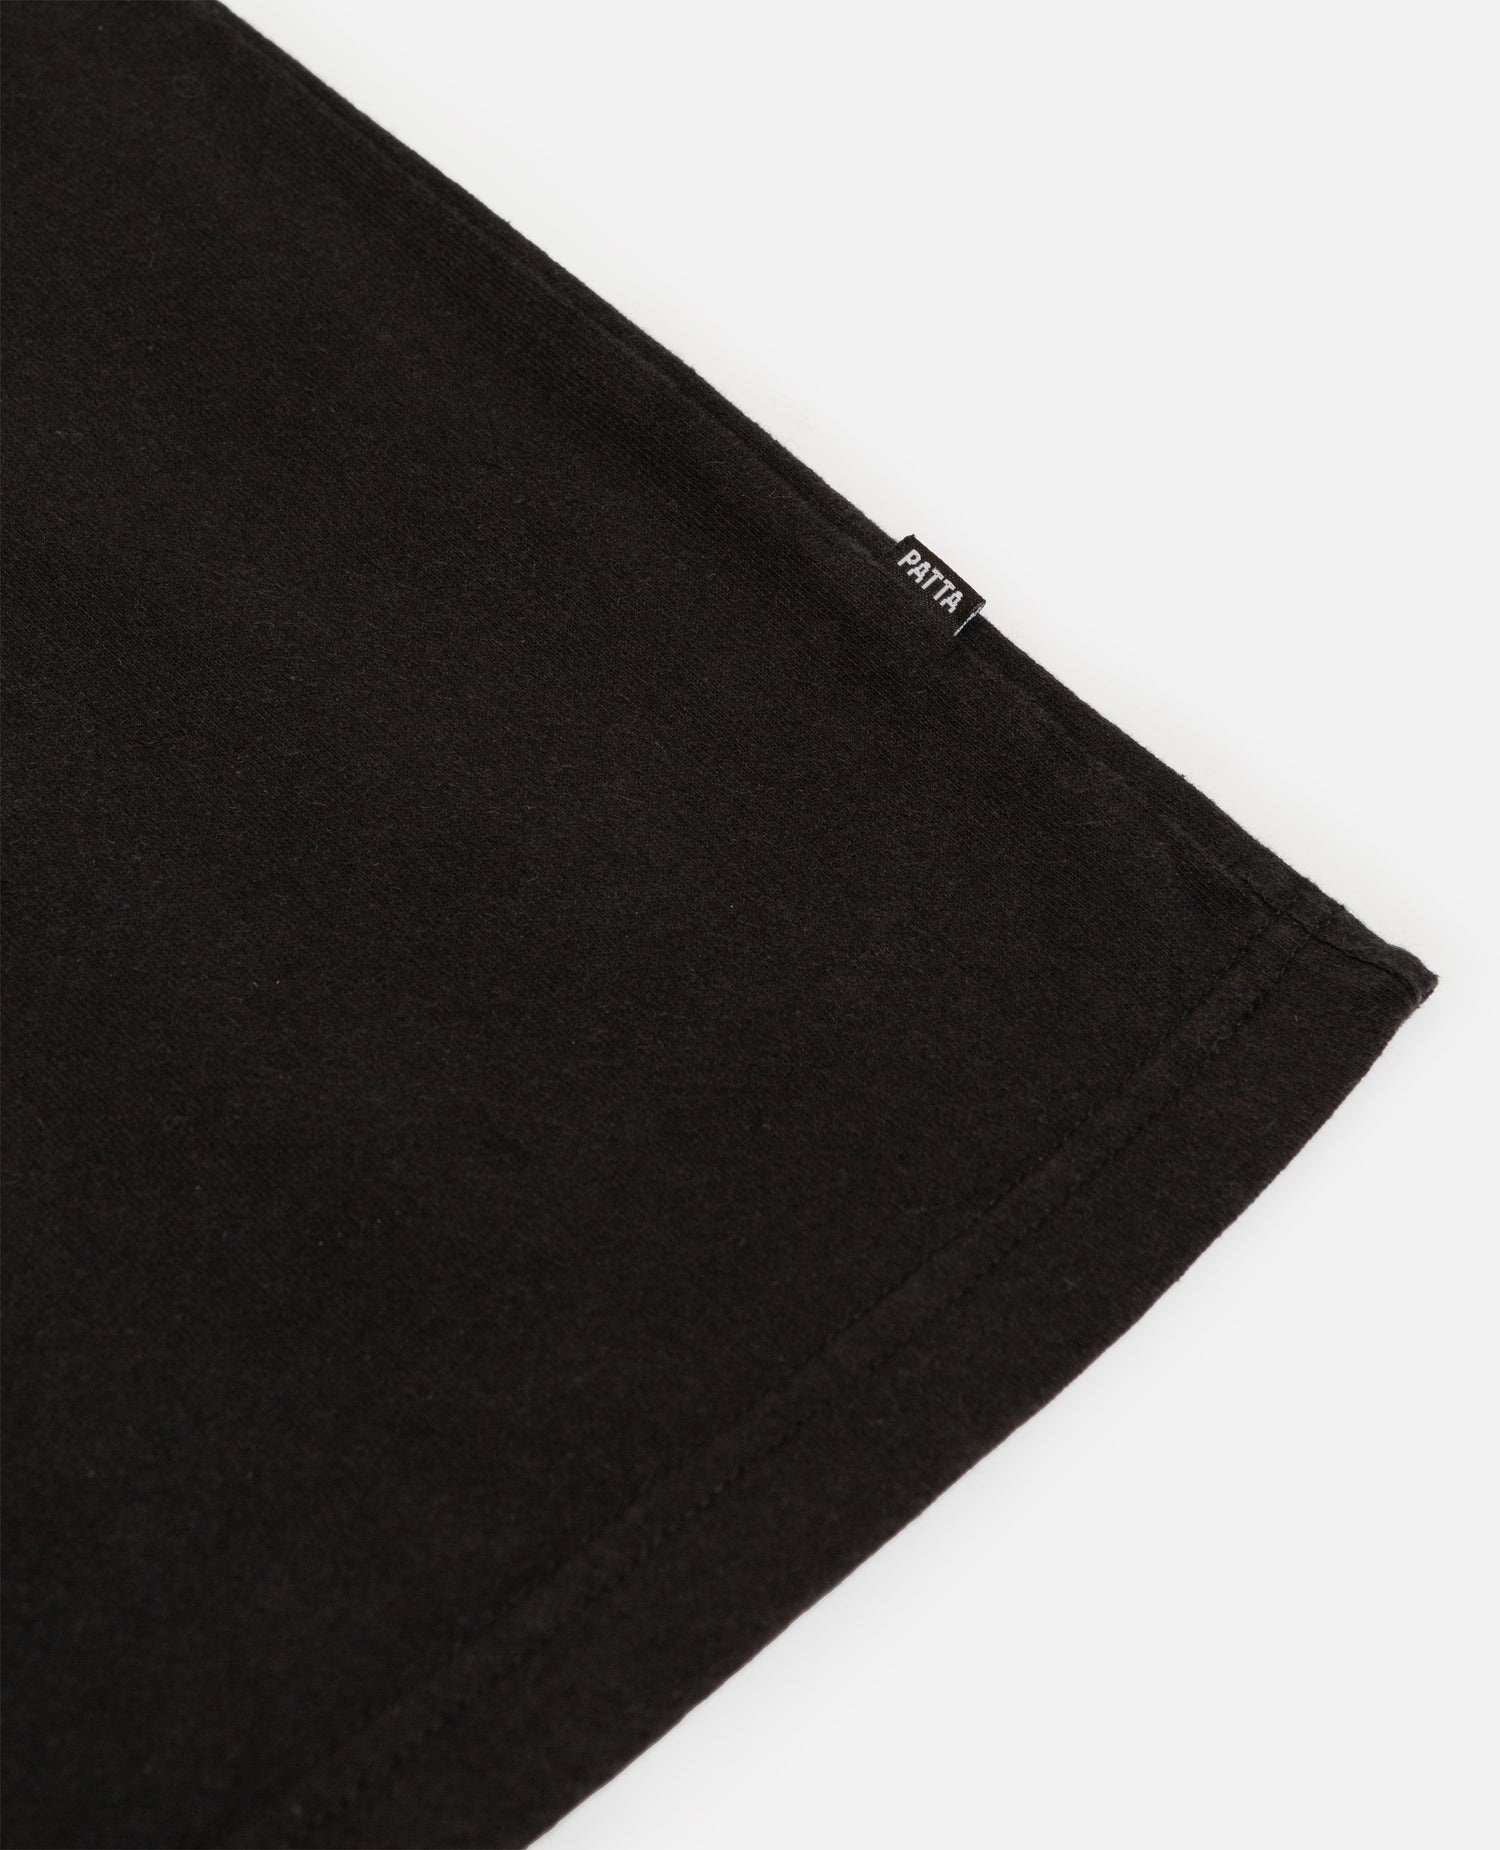 Patta Soundsystem x Tom Trago Washed Pocket T-Shirt (Black)